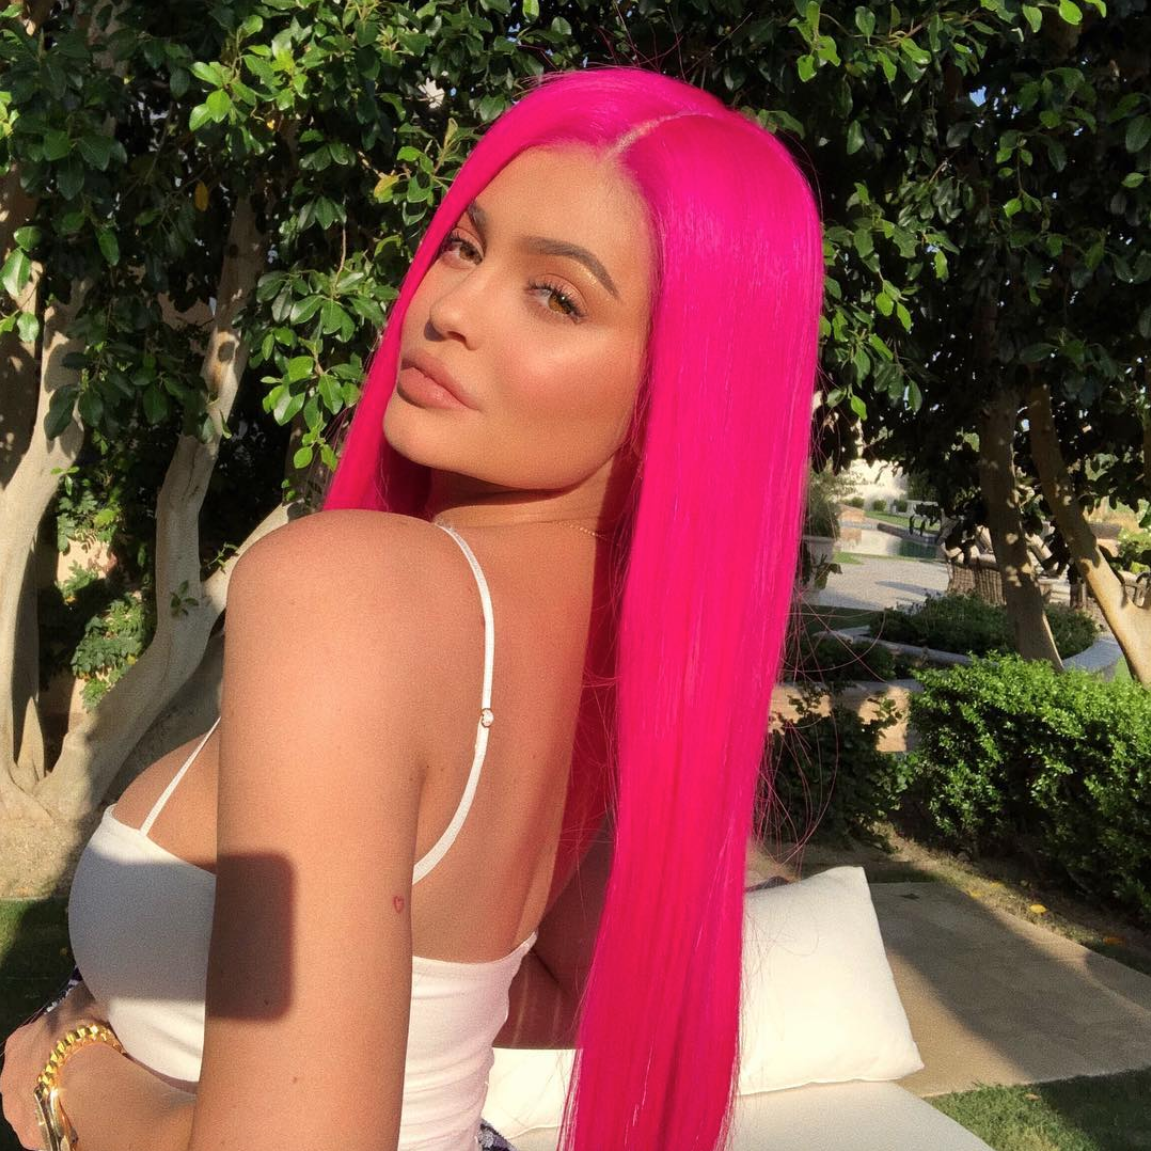 τα hair colors της Kylie Jenner - νέο ροζ